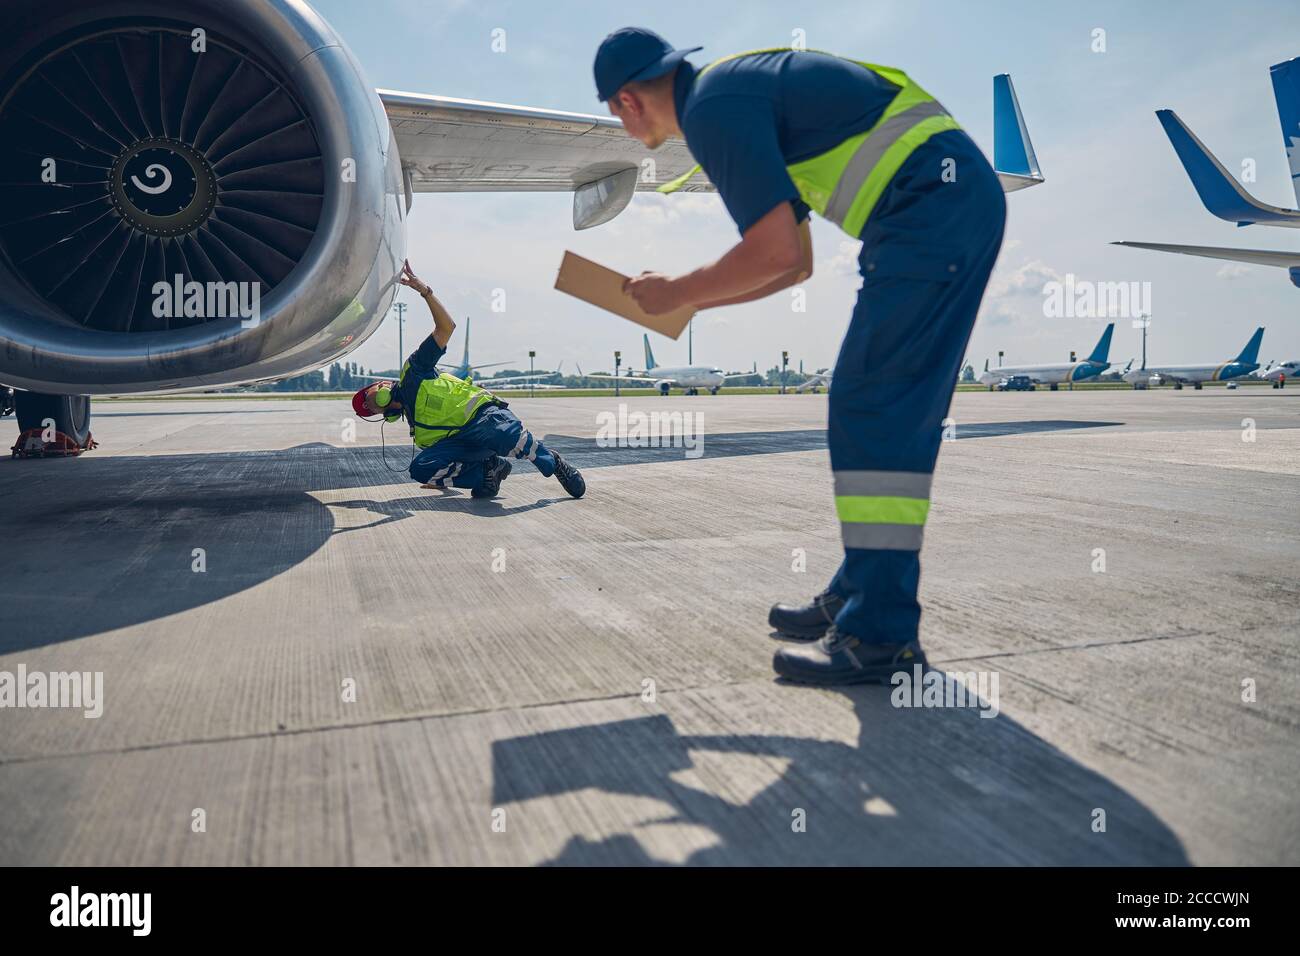 Professionelle Flugzeugmechaniker, die die Motorverkleidung inspizieren Stockfoto